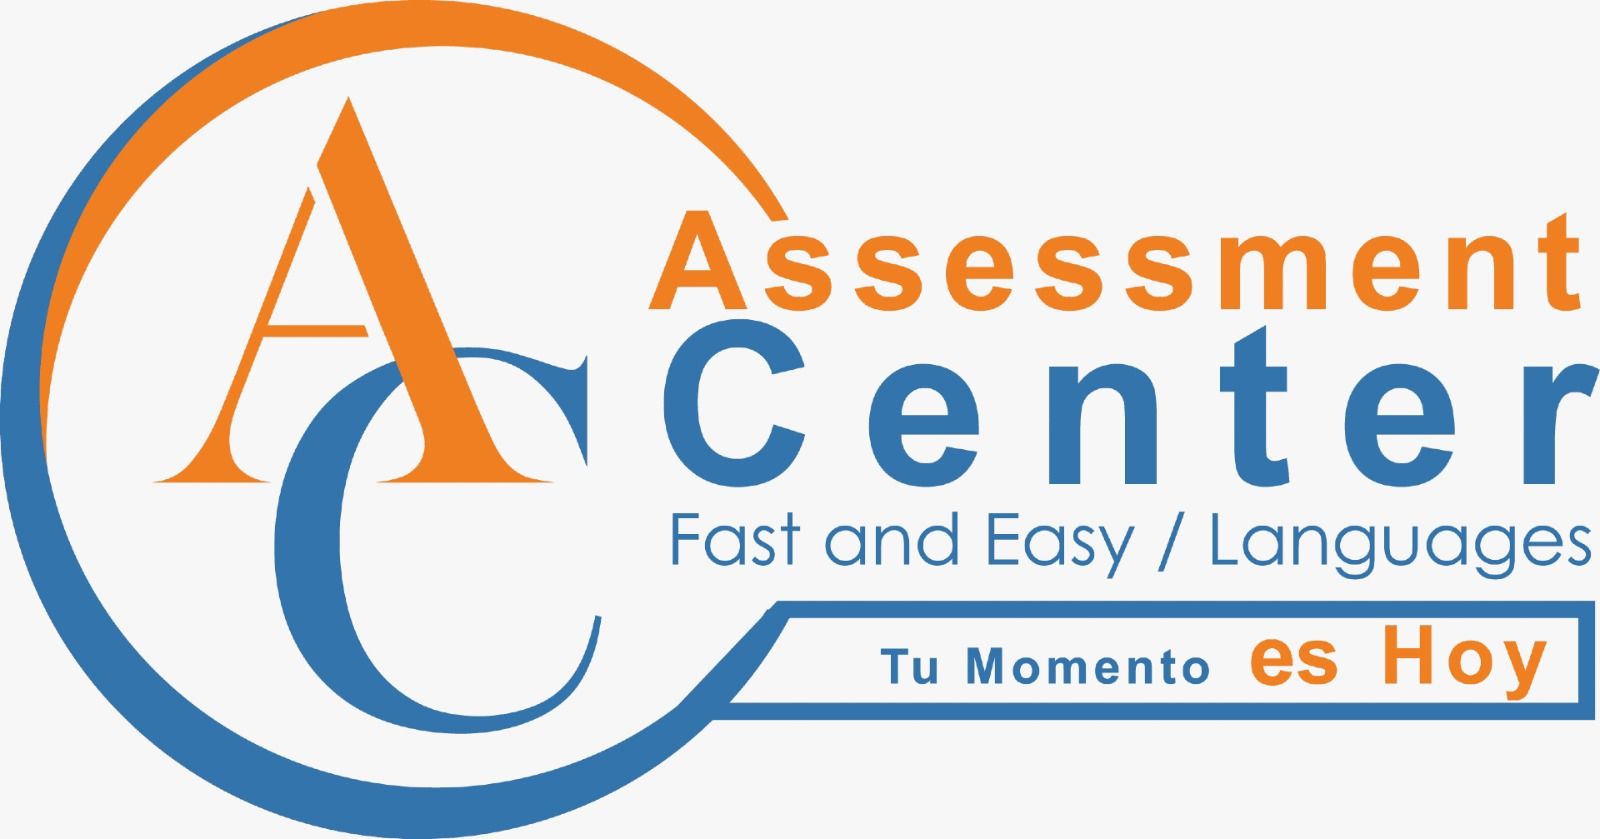 Assessment Center fast anda easy